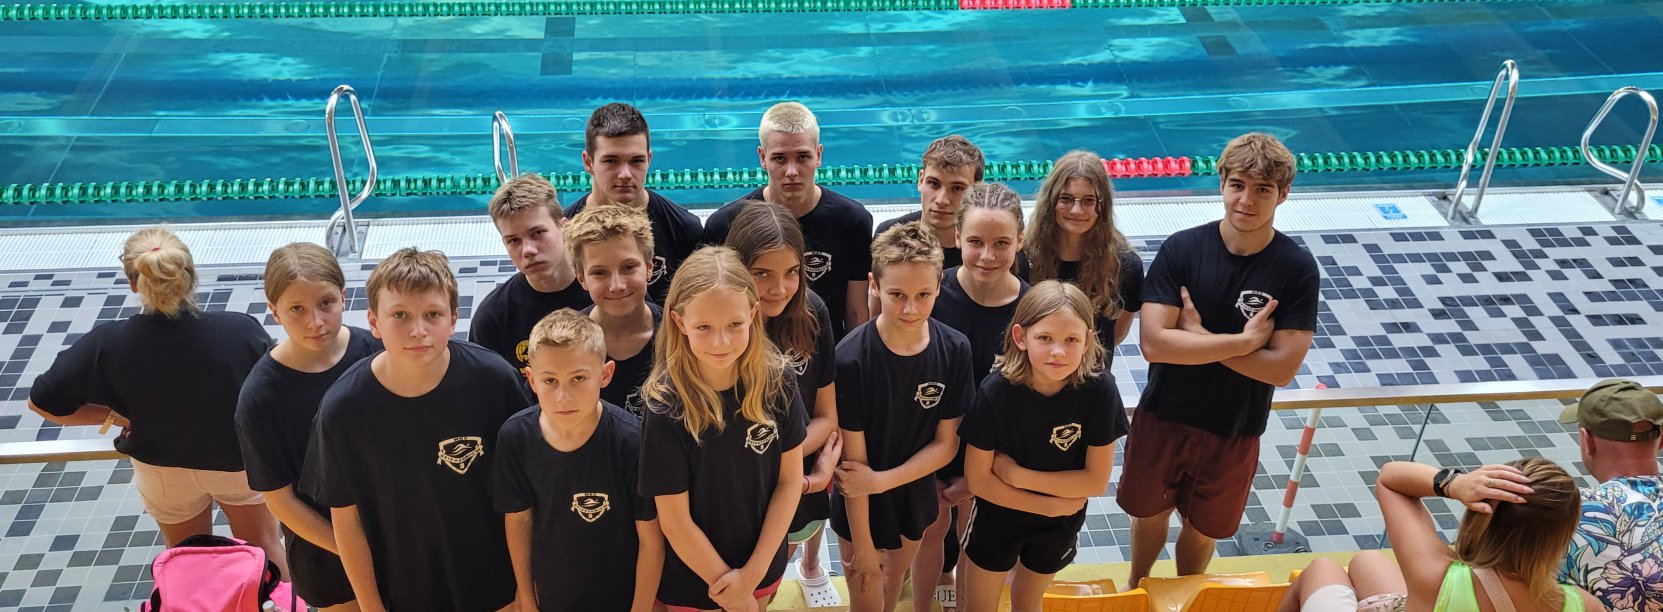 Grupowe zdjęcie pływaków w czarnych koszulkach przy basenie